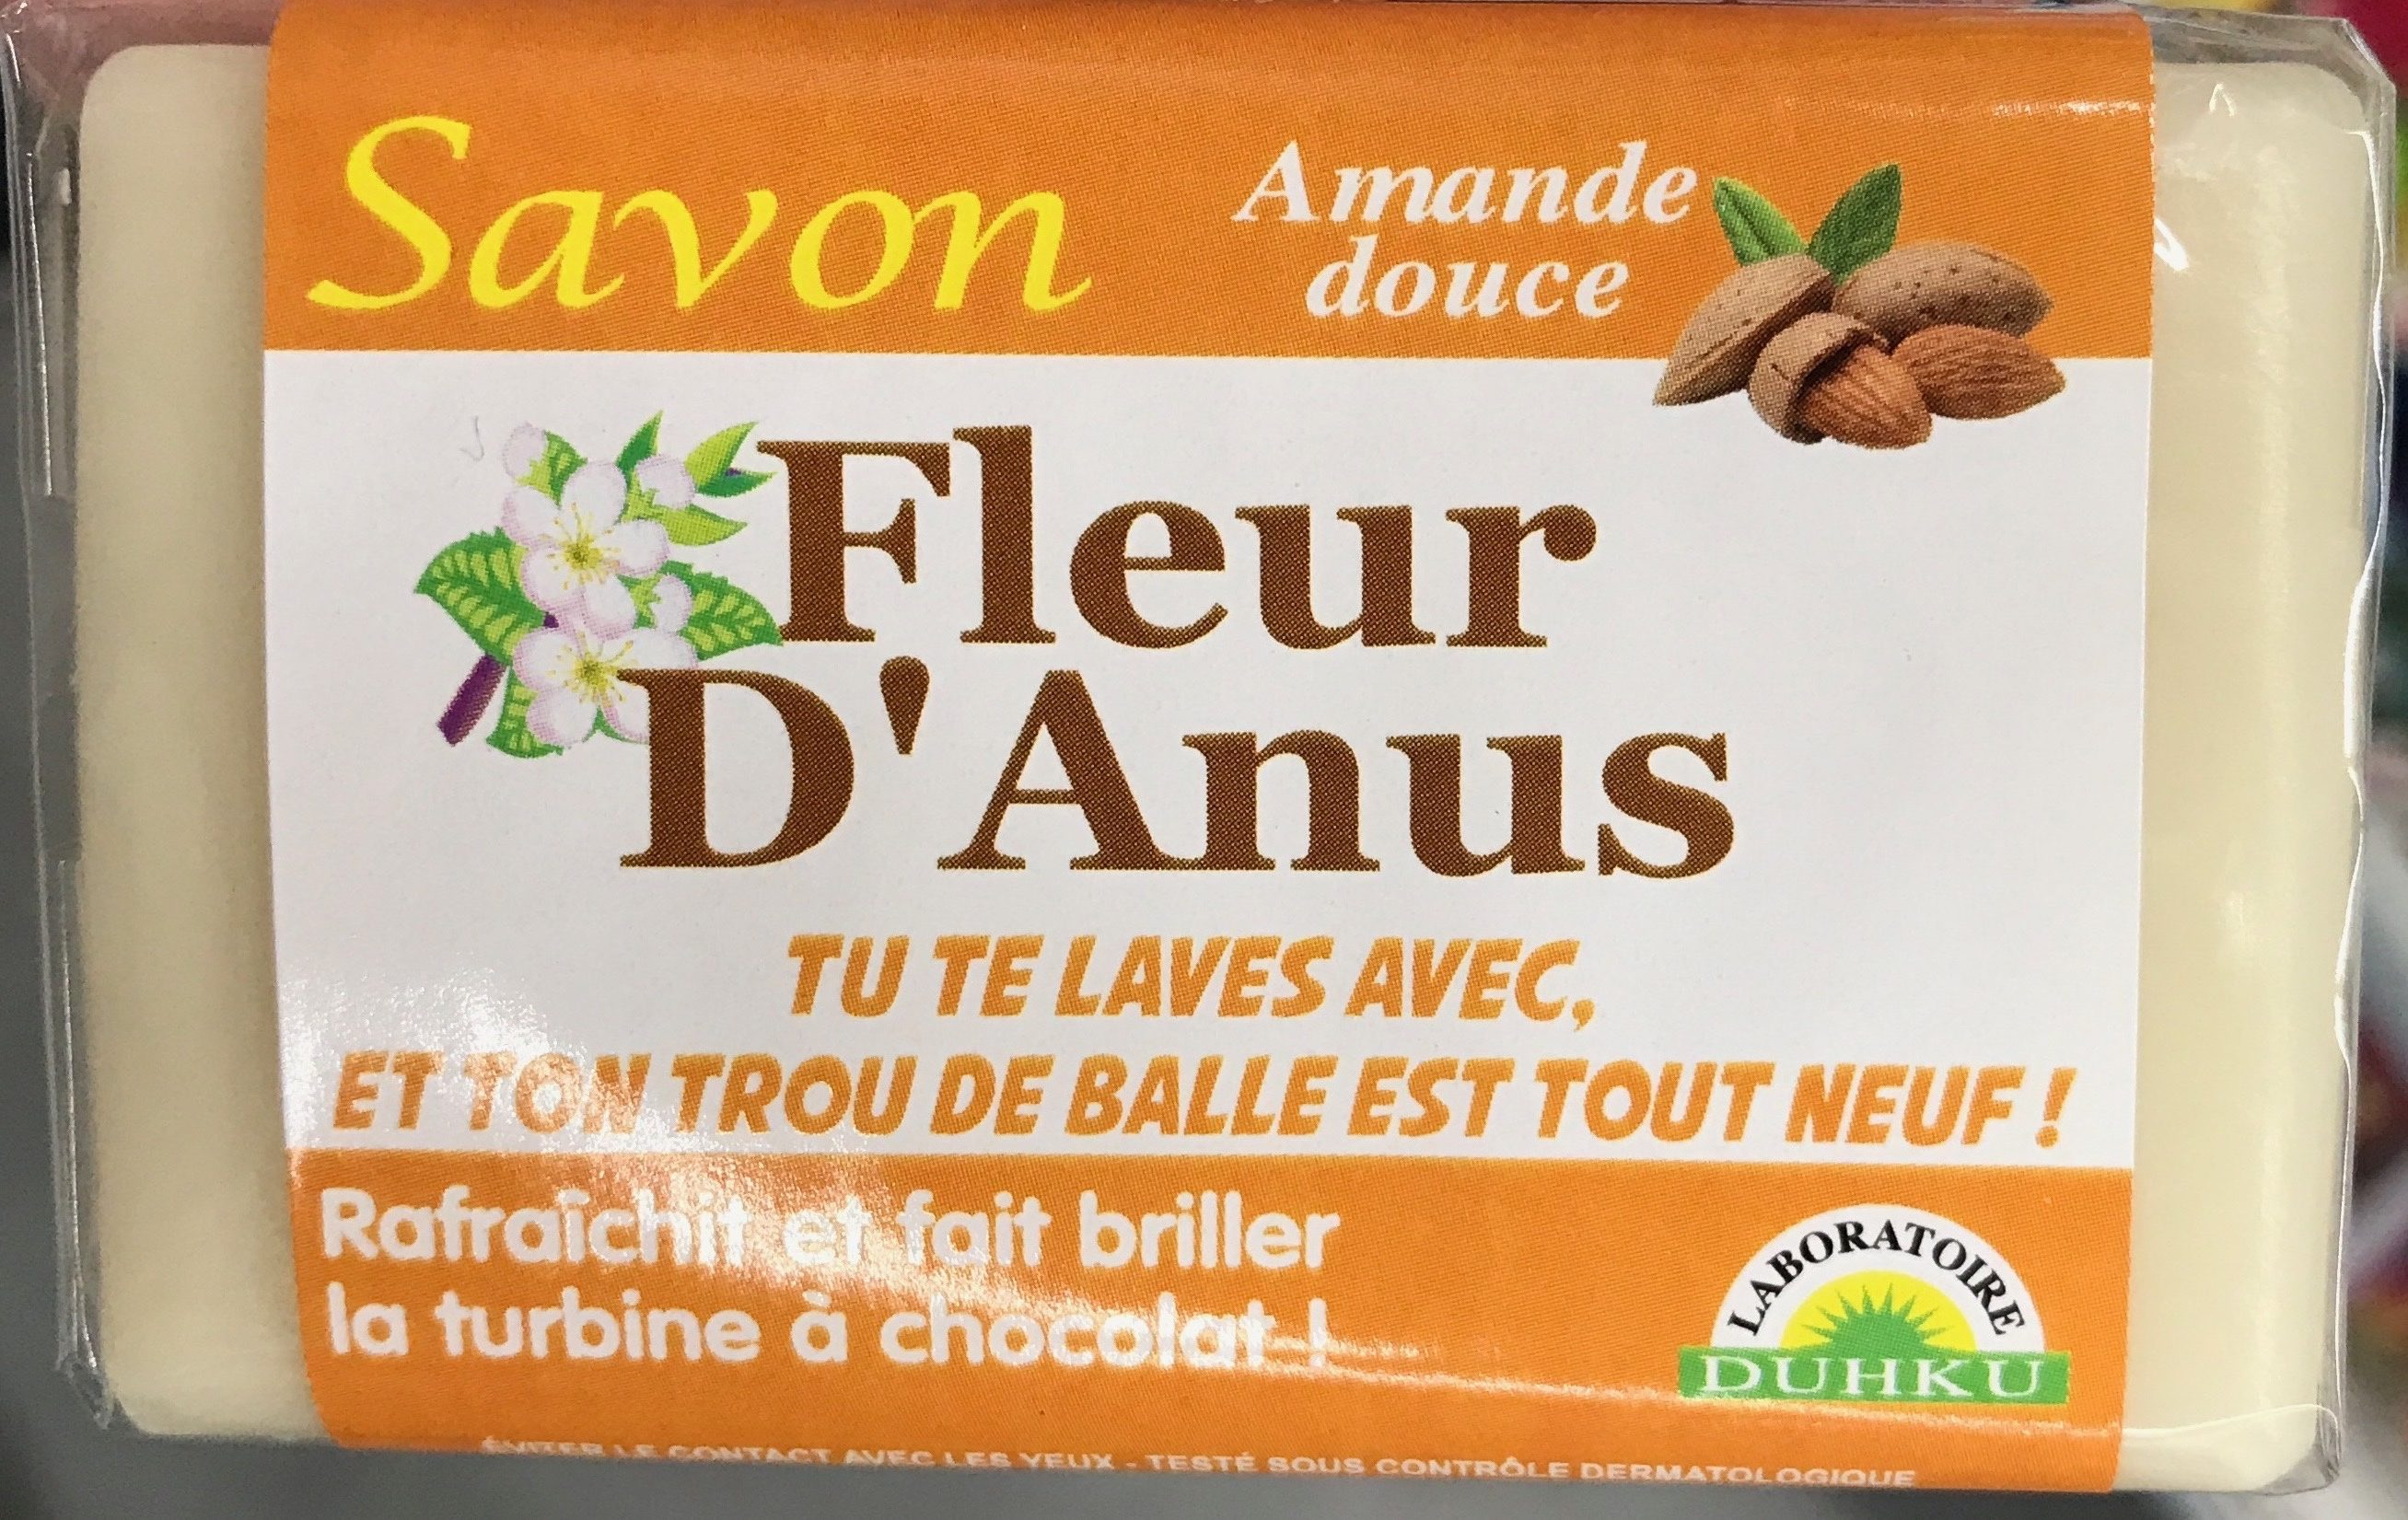 Savon Fleur d'Anus Amande douce - Produkto - fr